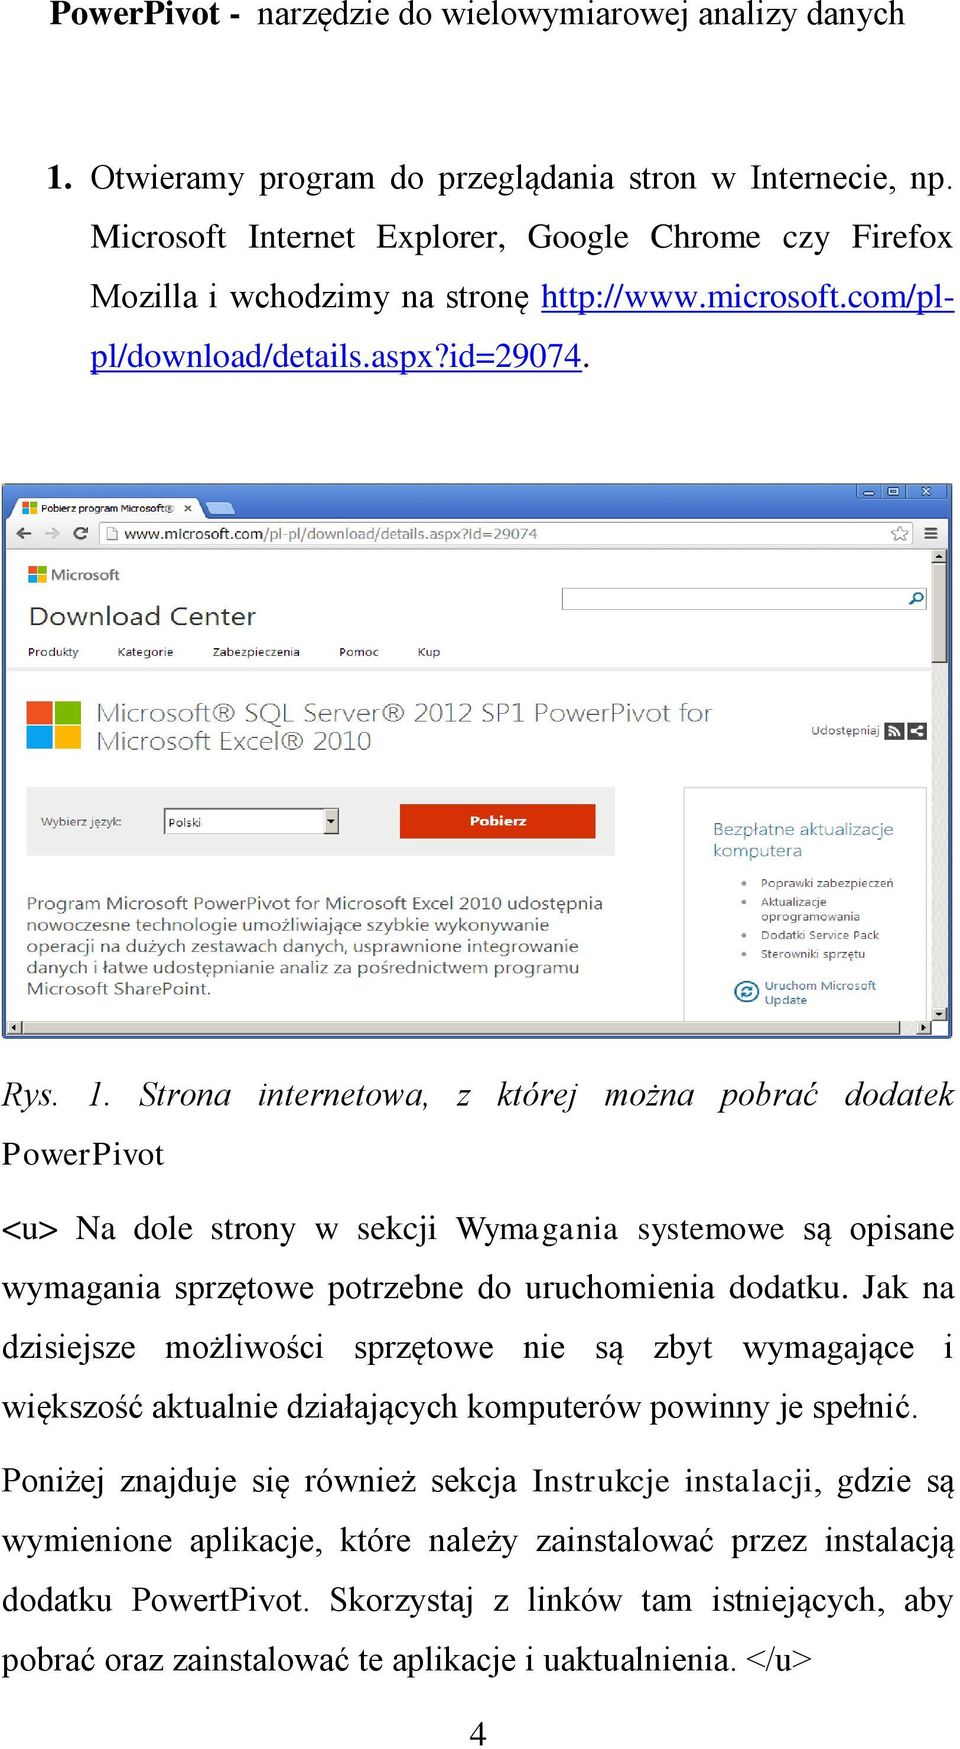 Strona internetowa, z której można pobrać dodatek PowerPivot <u> Na dole strony w sekcji Wymagania systemowe są opisane wymagania sprzętowe potrzebne do uruchomienia dodatku.